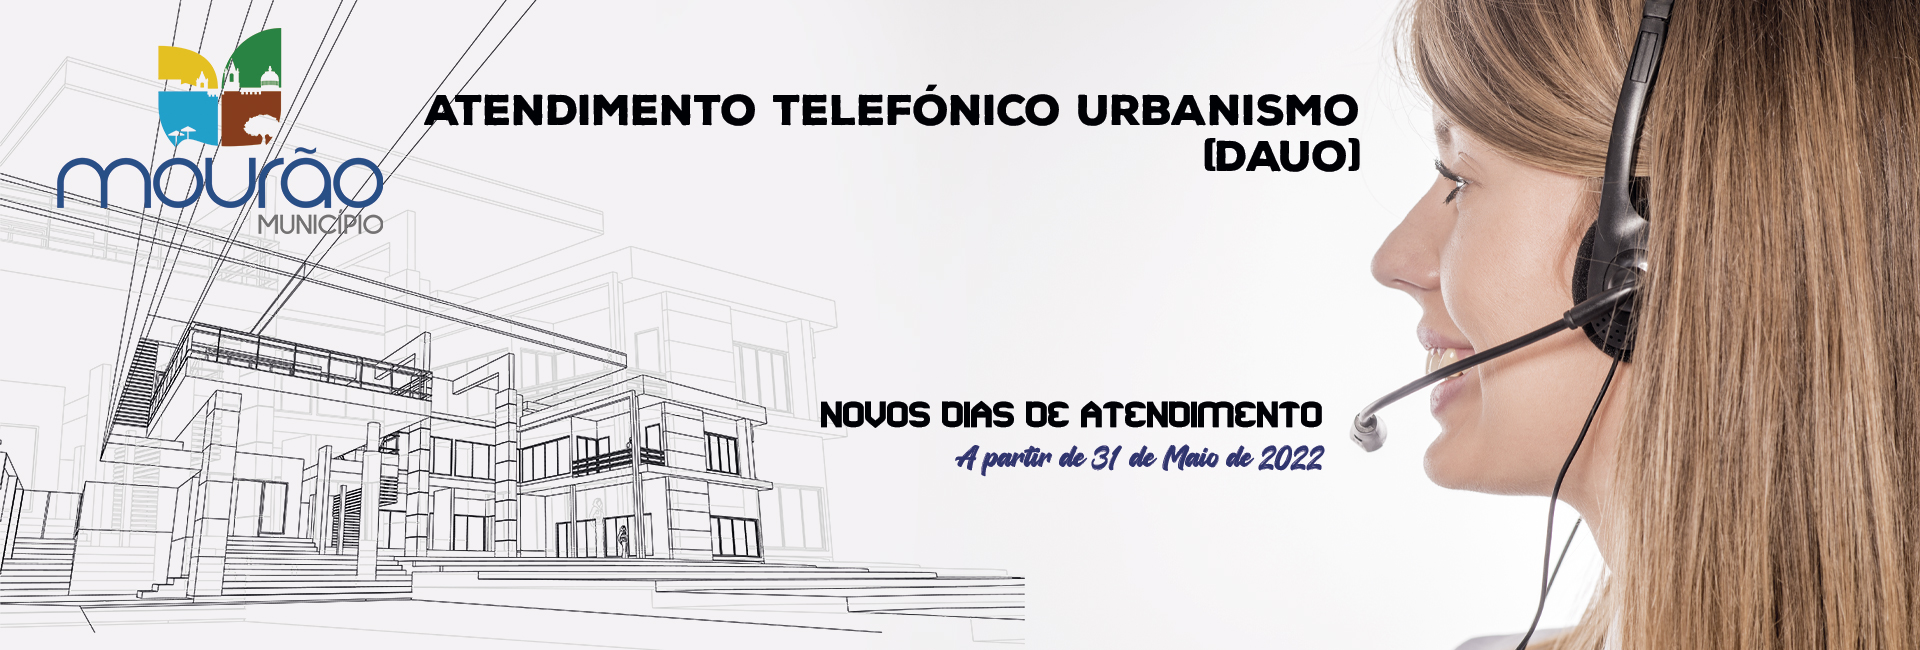 Atendimento Telefónico Urbanismo – DAUO